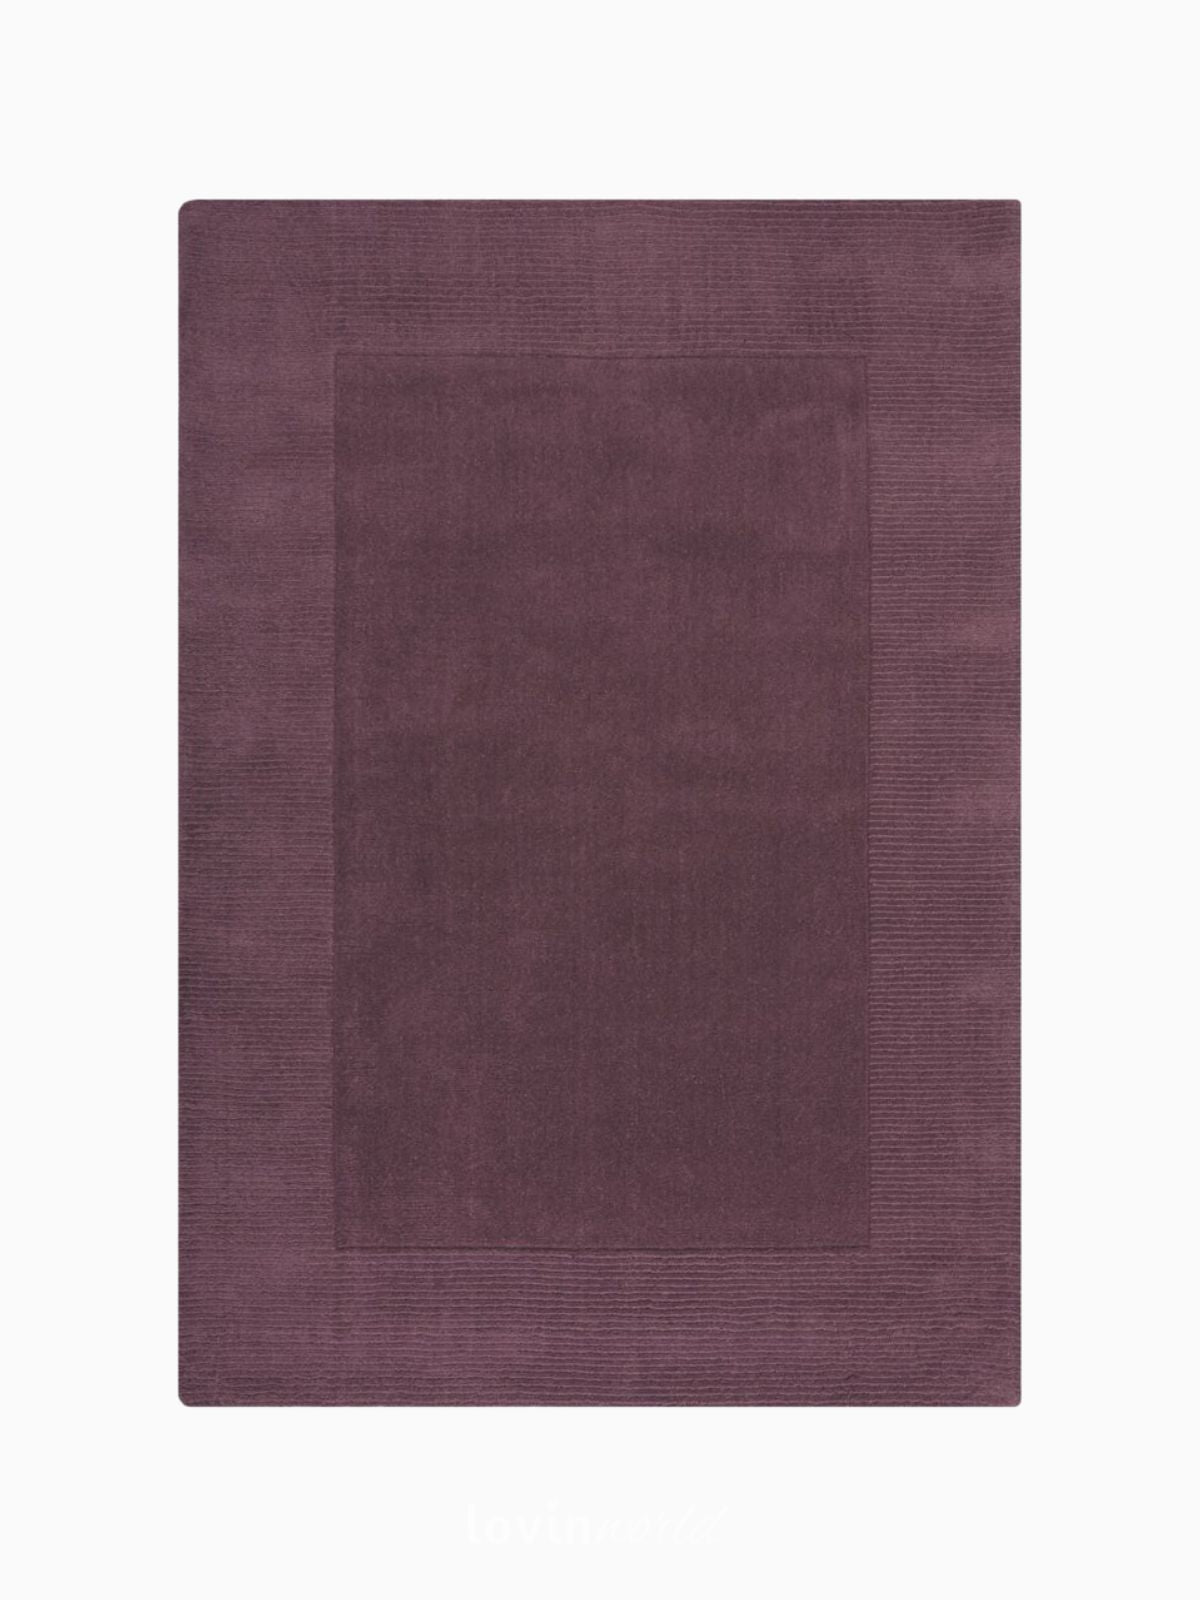 Tappeto di design Textured Wool Border in lana, colore viola-1